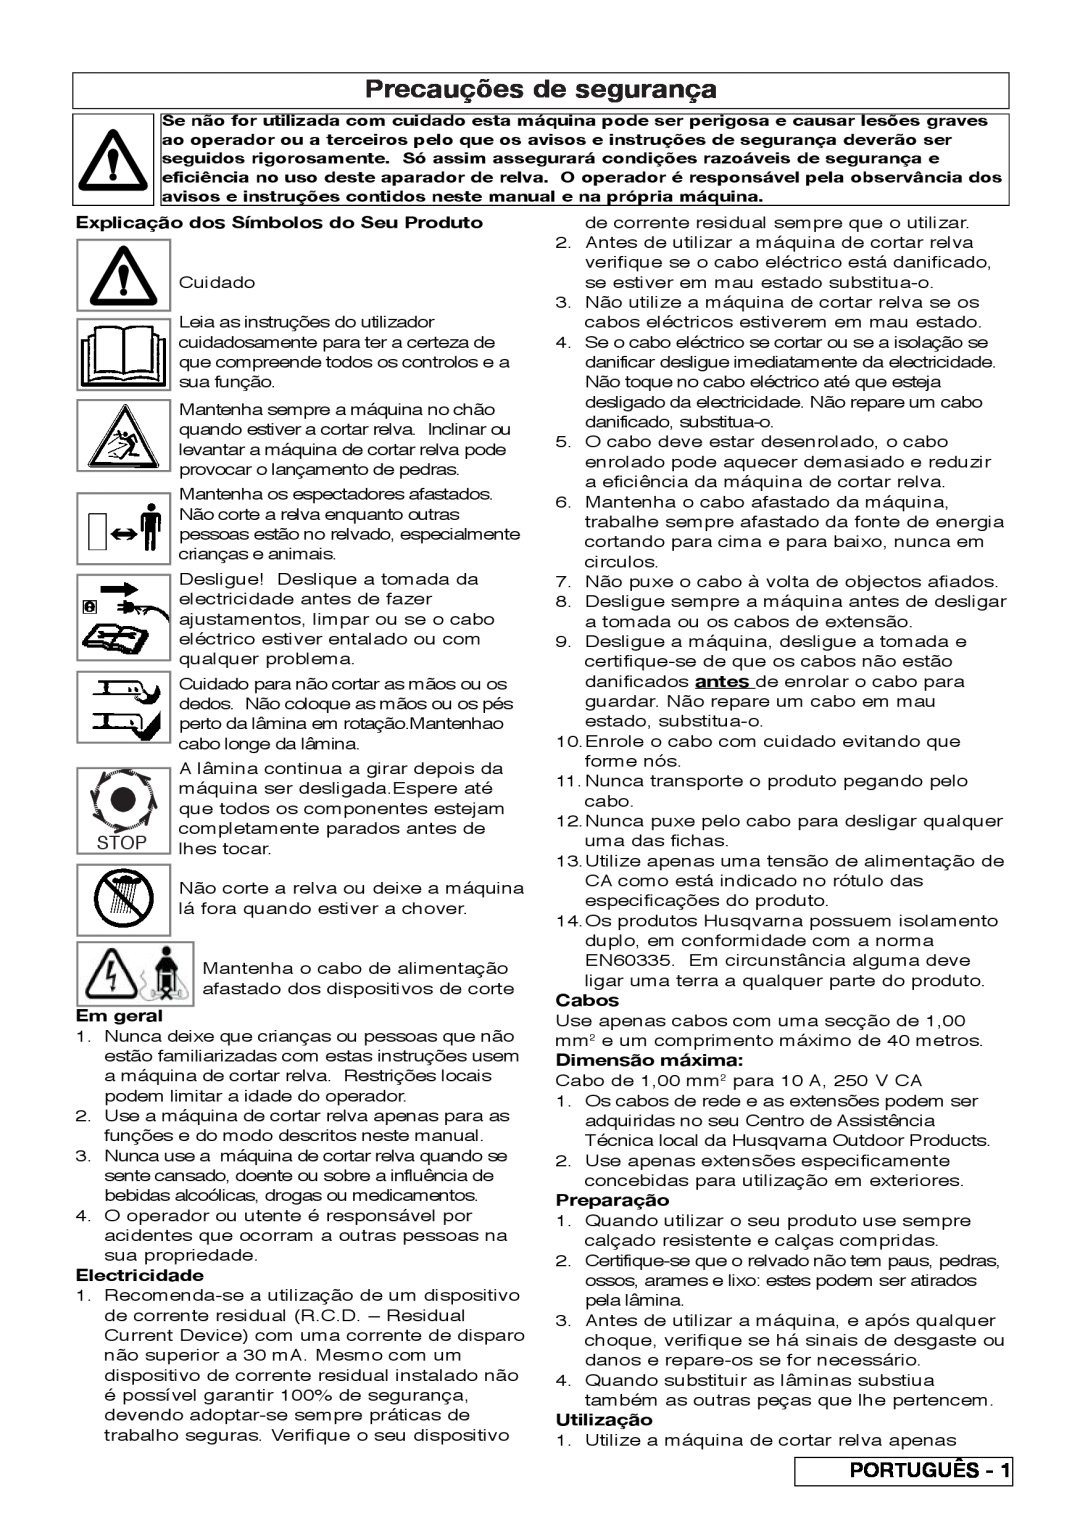 Flymo VM032 Precauções de segurança, Português, Explicação dos Símbolos do Seu Produto, Em geral, Electricidade, Cabos 